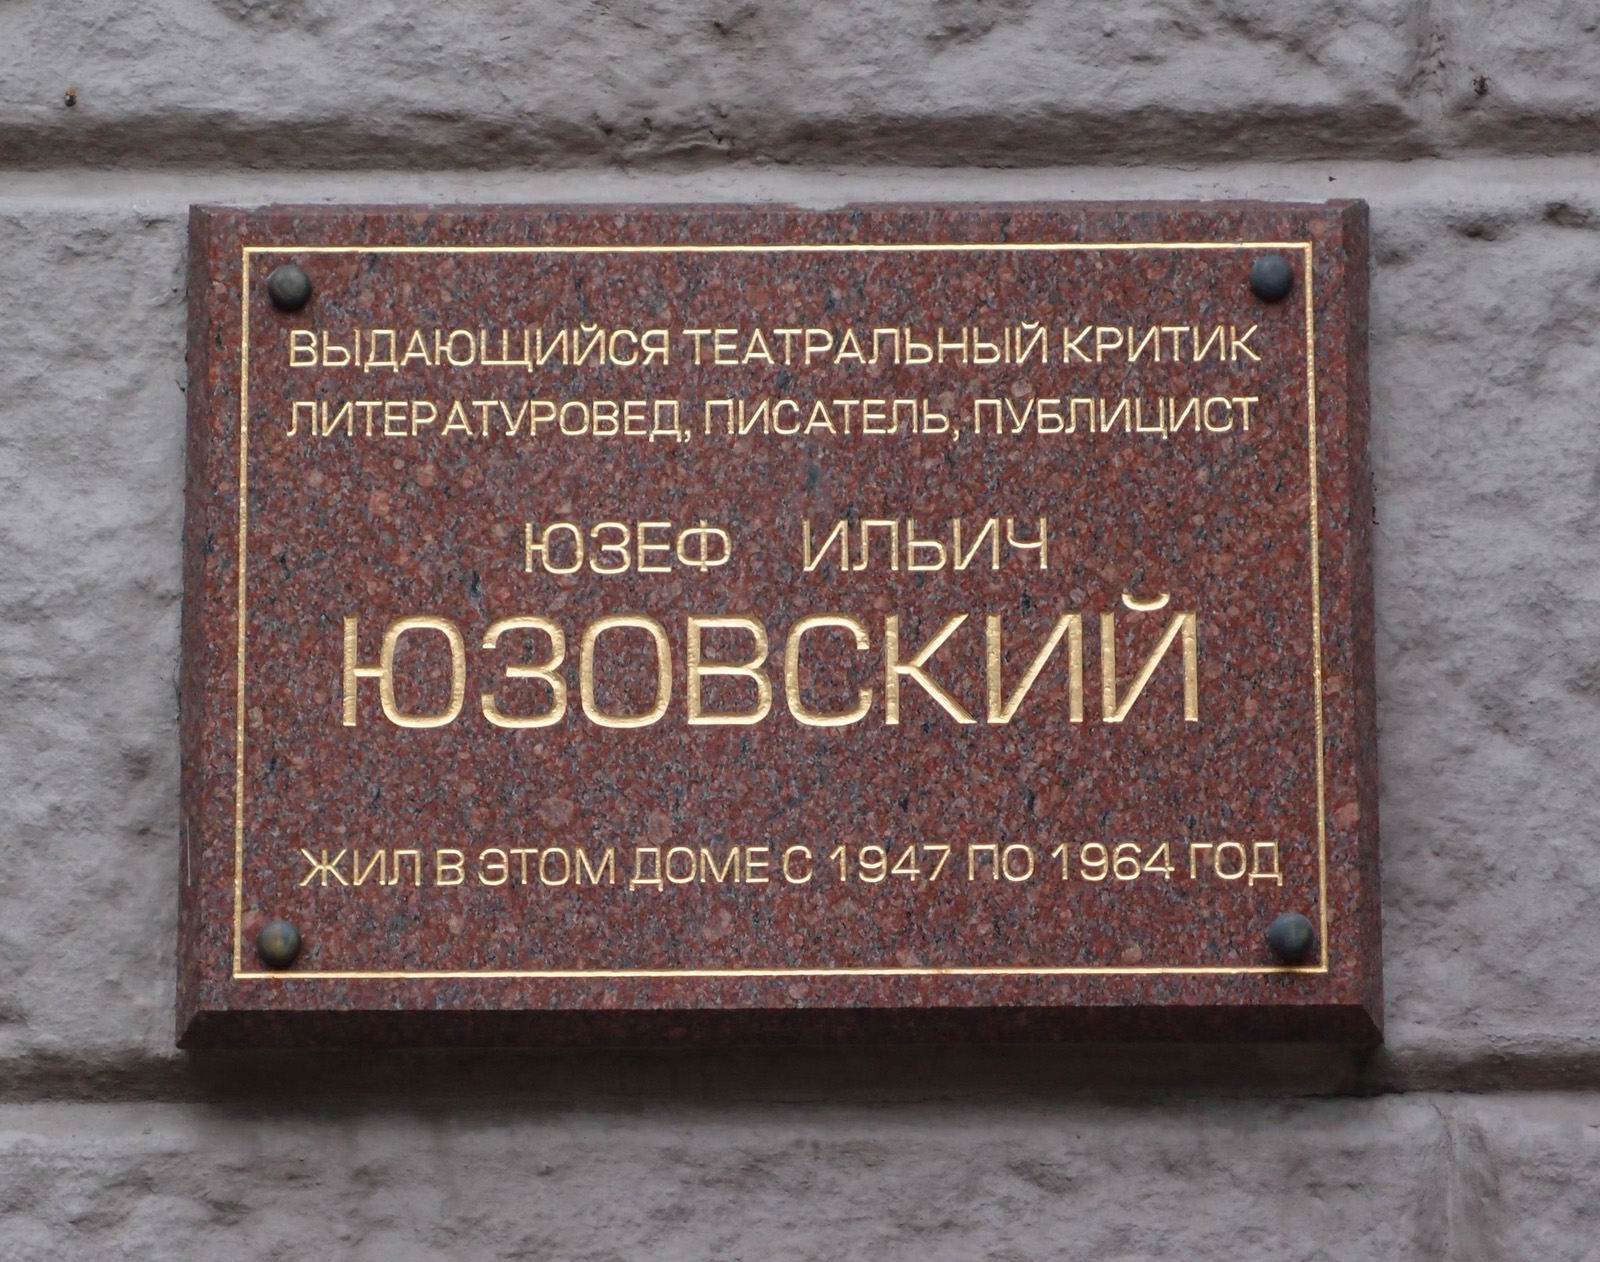 Мемориальная доска Юзовскому И.И. (1902–1964), арх. А.Щепетильников, в Лаврушенском переулке, дом 17, открыта 26.3.2004.